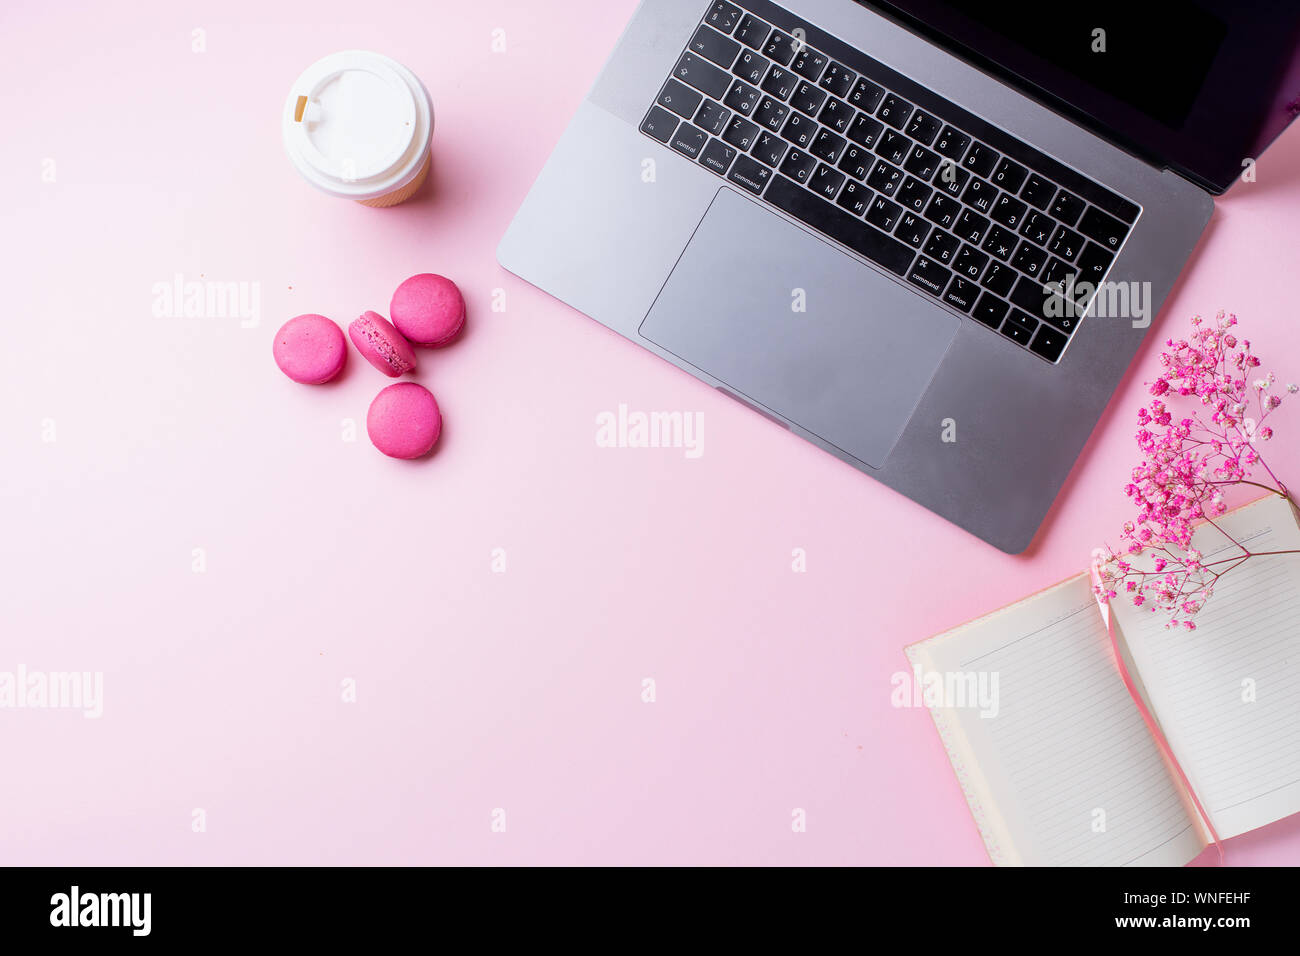 Flatlay avec coffre, café et macarons sur fond rose. Vue de dessus, copiez l'espace. Concept de poste de travail. Banque D'Images